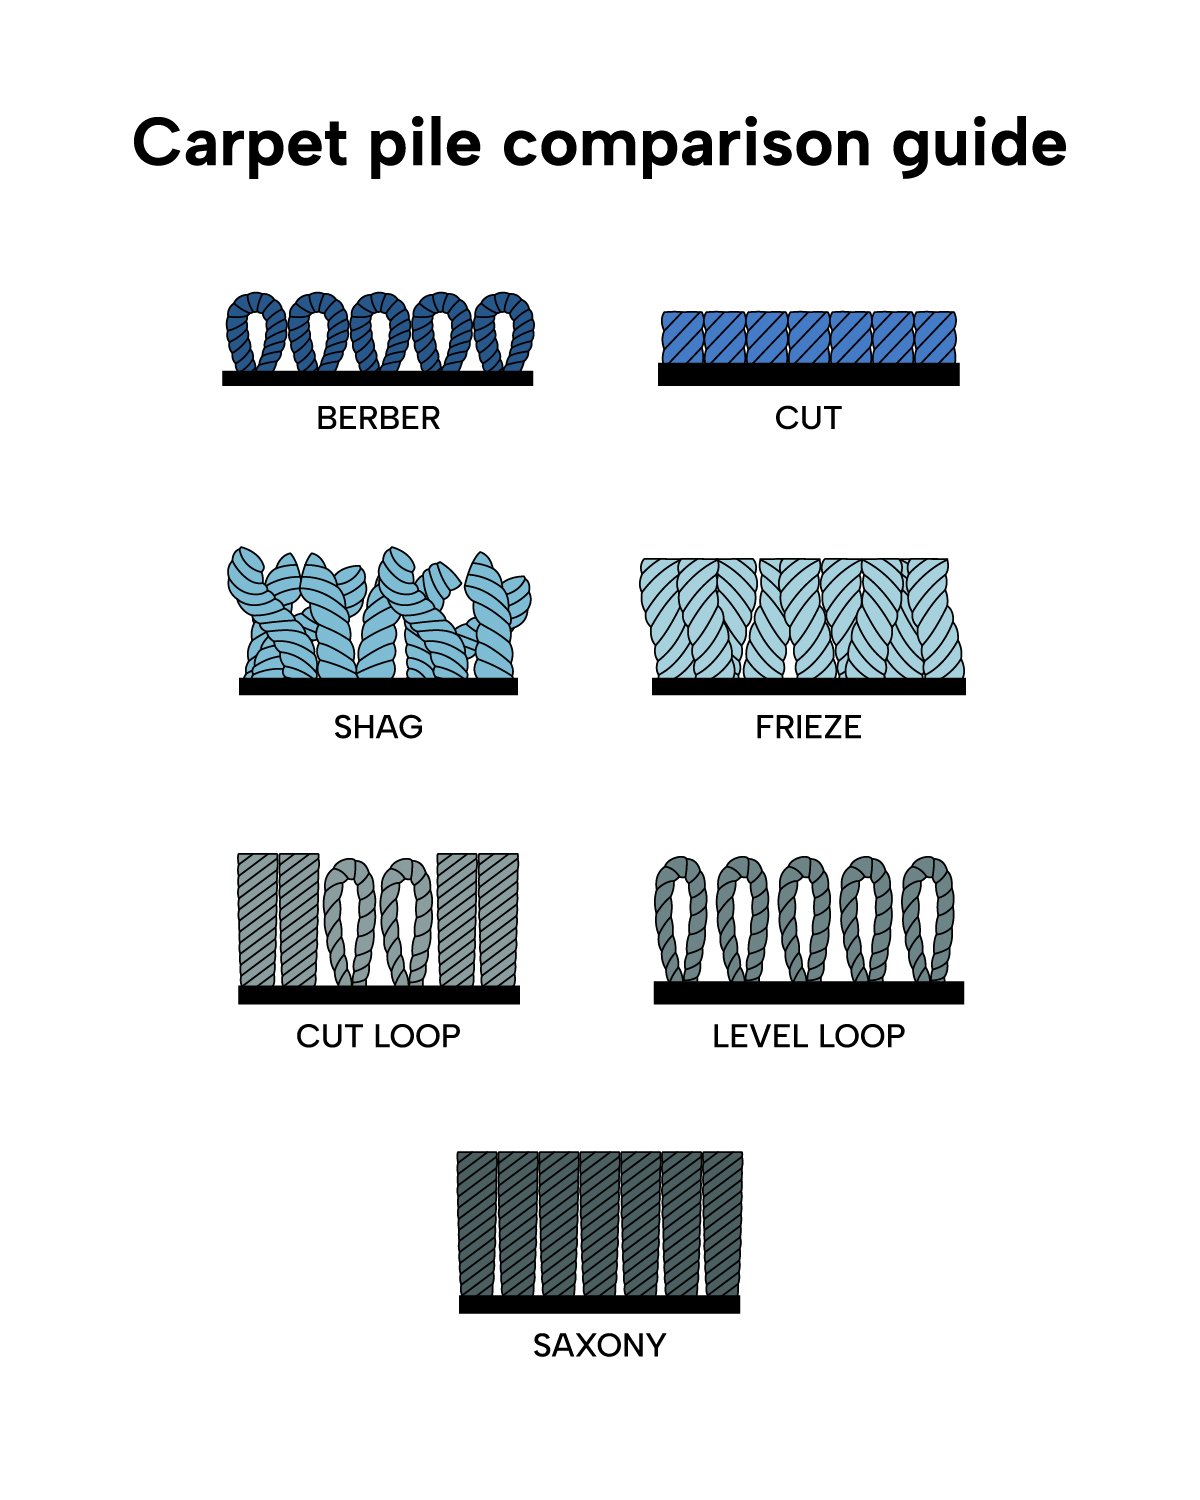 不同地毯堆选项的图形比较指南:柏柏尔，粗毛，环，萨克森，Frieze和切割。